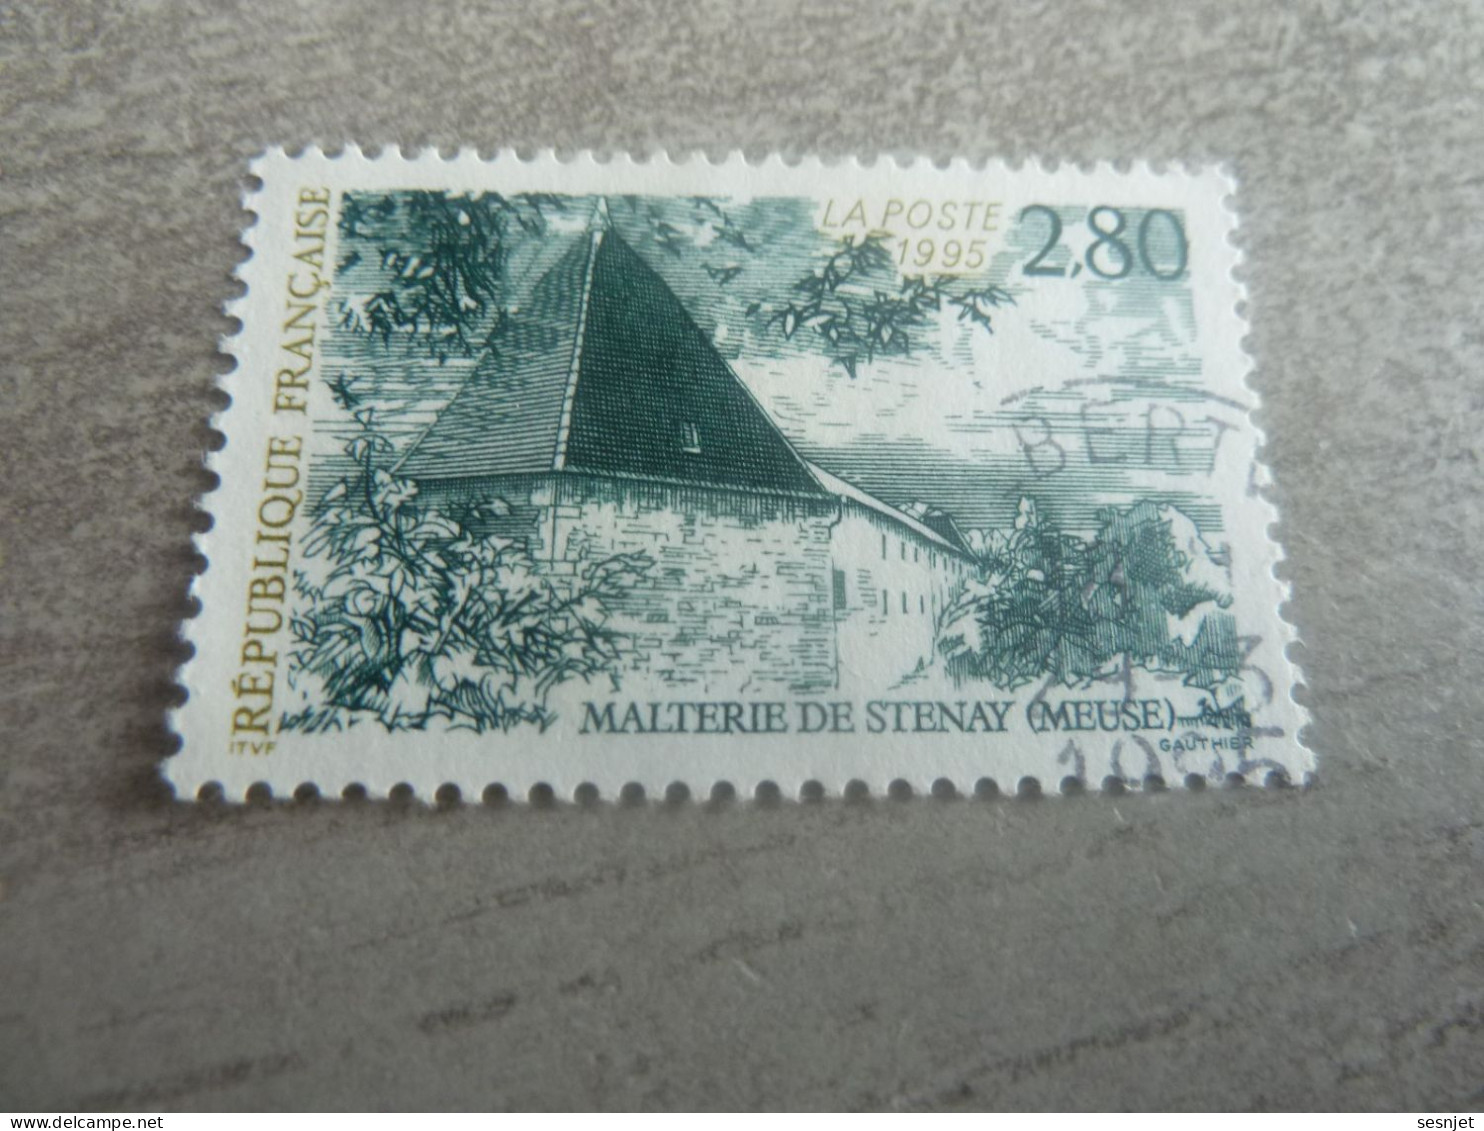 La Malterie De Stenay - Meuse - 2f.80 - Yt 2954 - Vert Foncé Et Olive Clair - Oblitéré - Année 1995 - - Oblitérés